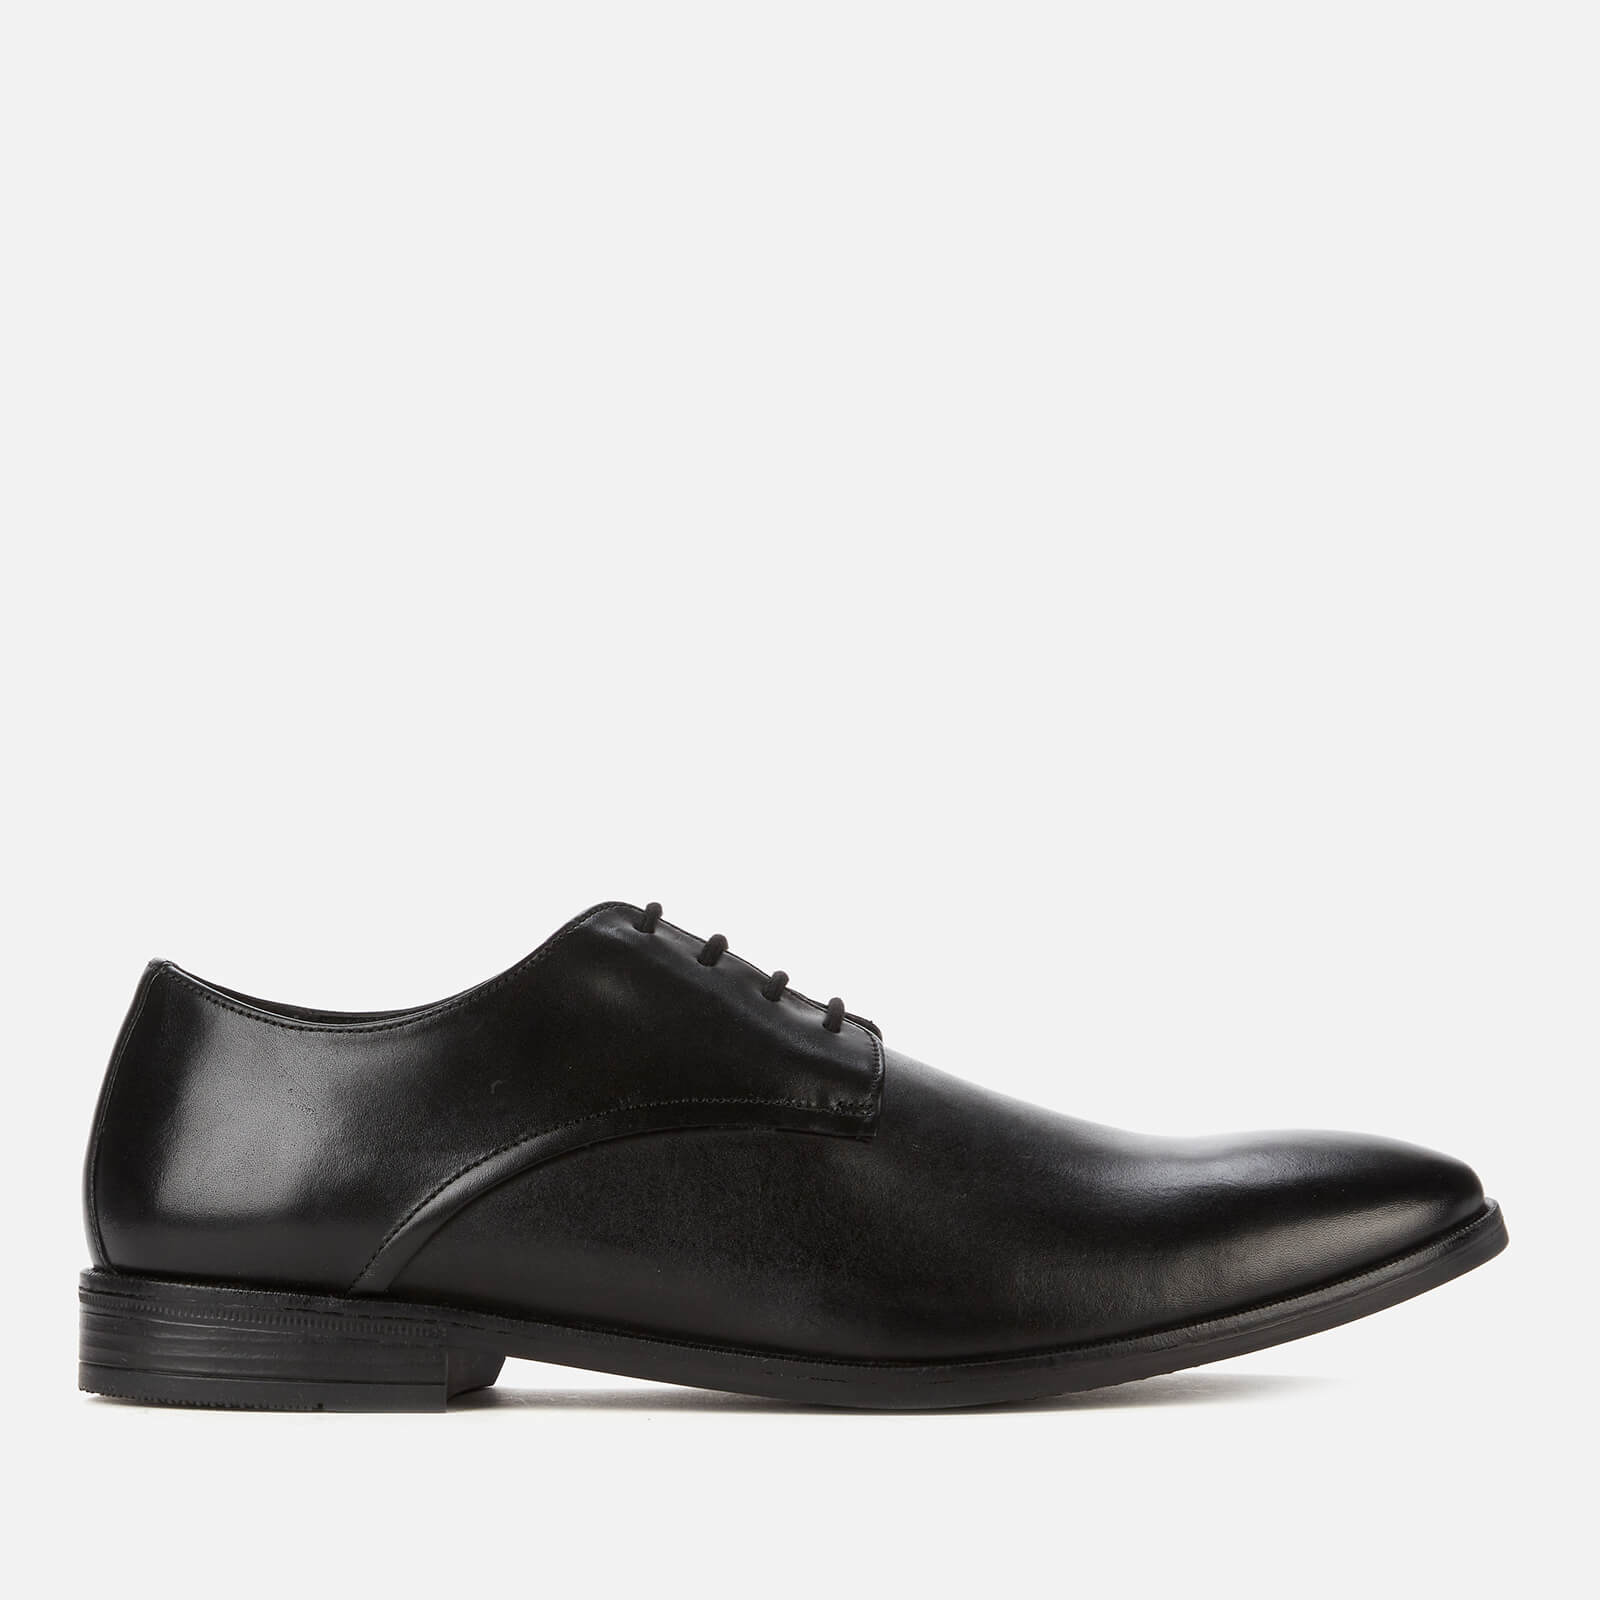 Clarks Men's Stanford Walk Leather Derby Shoes - Black - UK 7